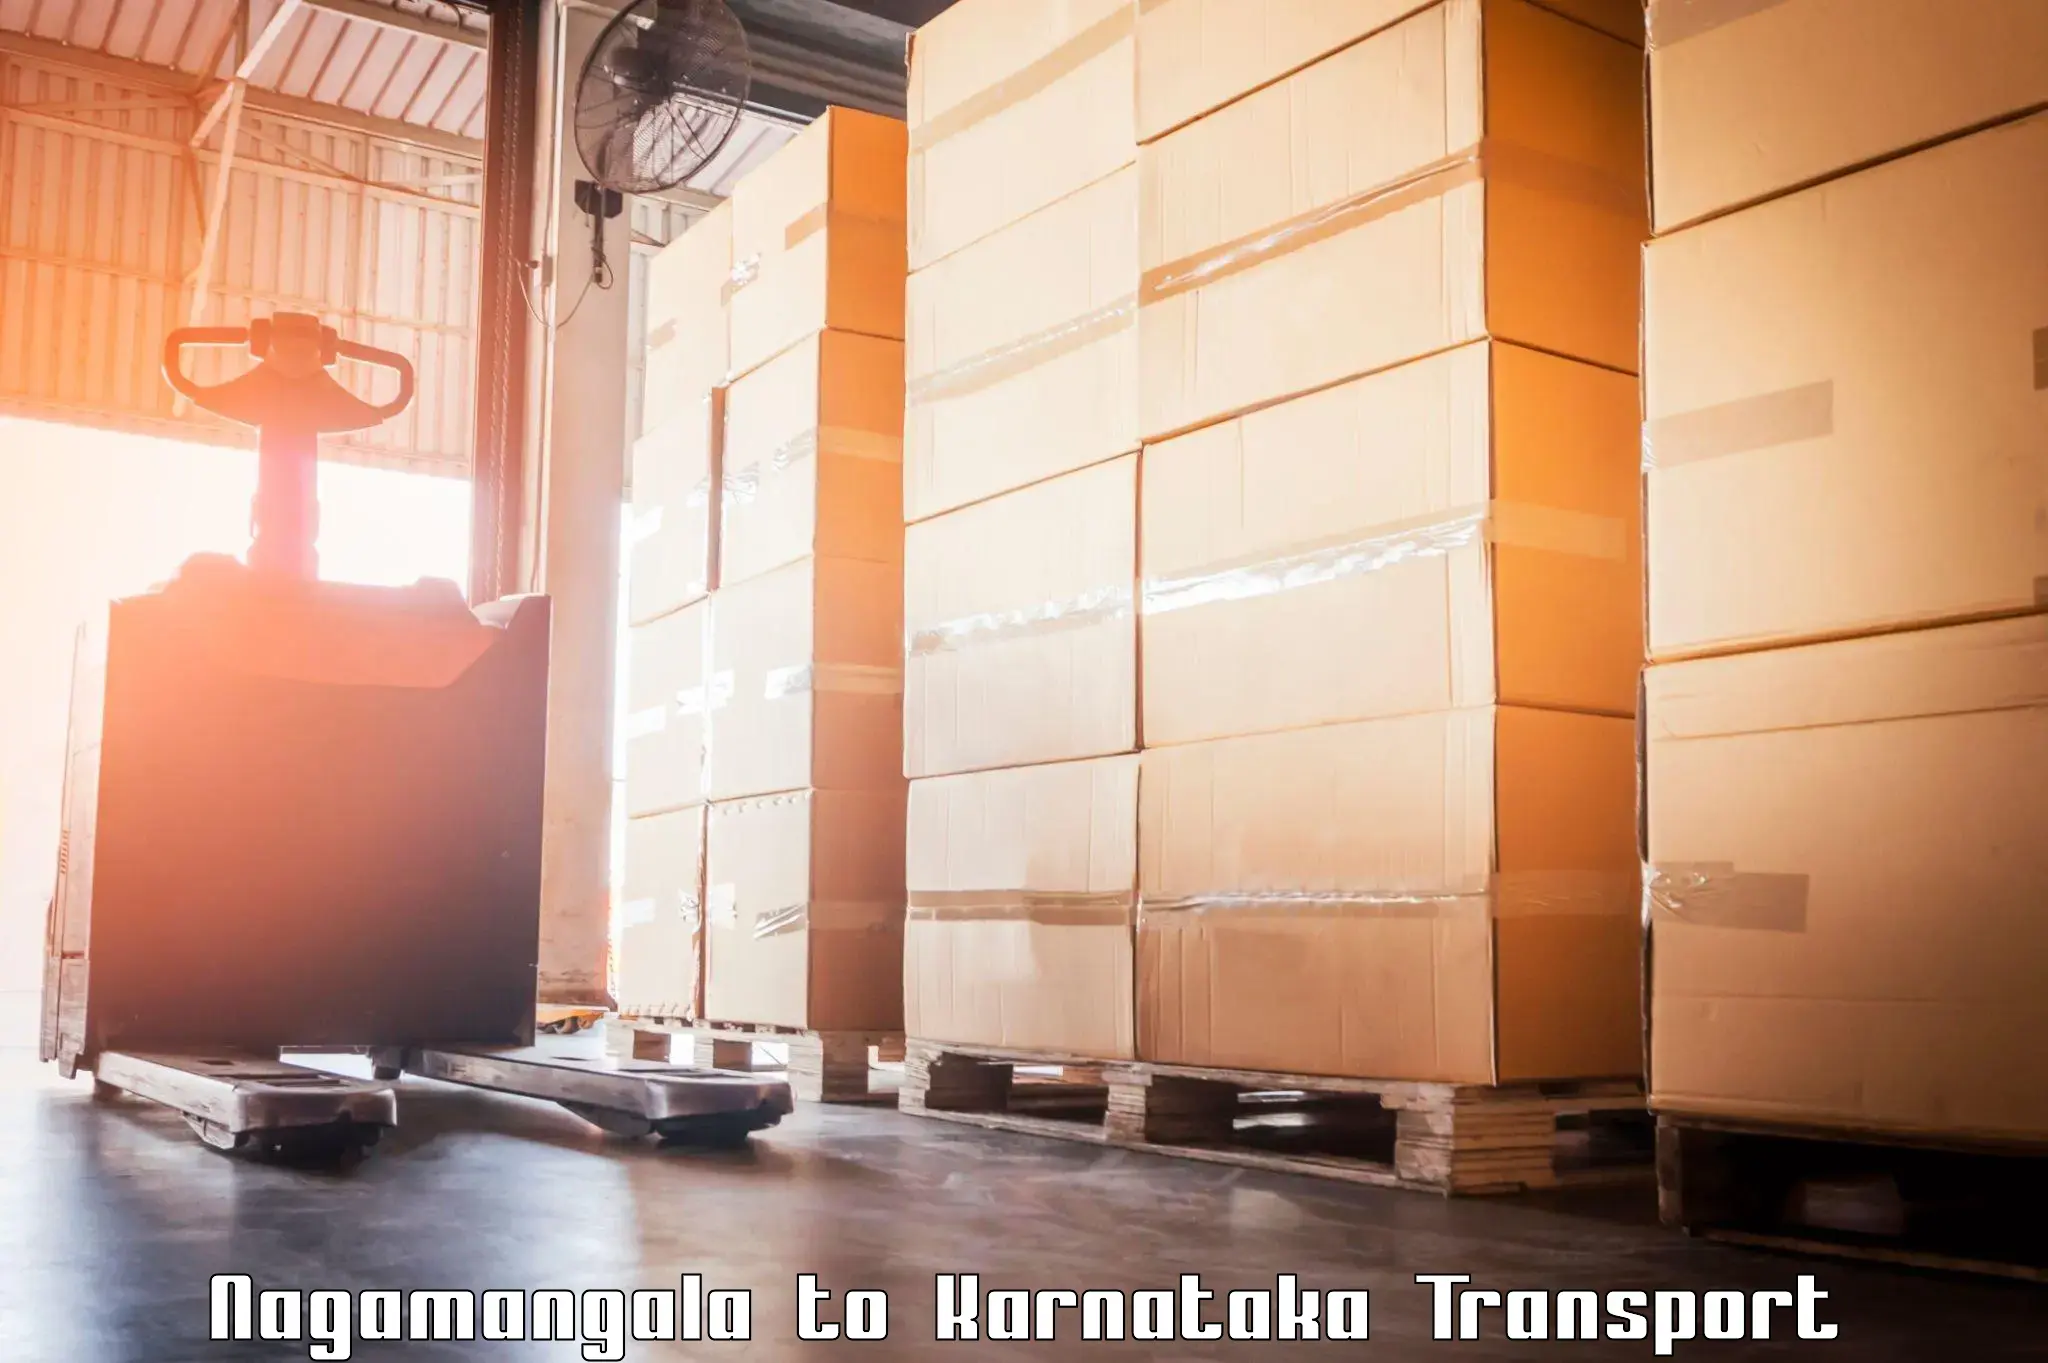 Cargo transport services Nagamangala to Harohalli